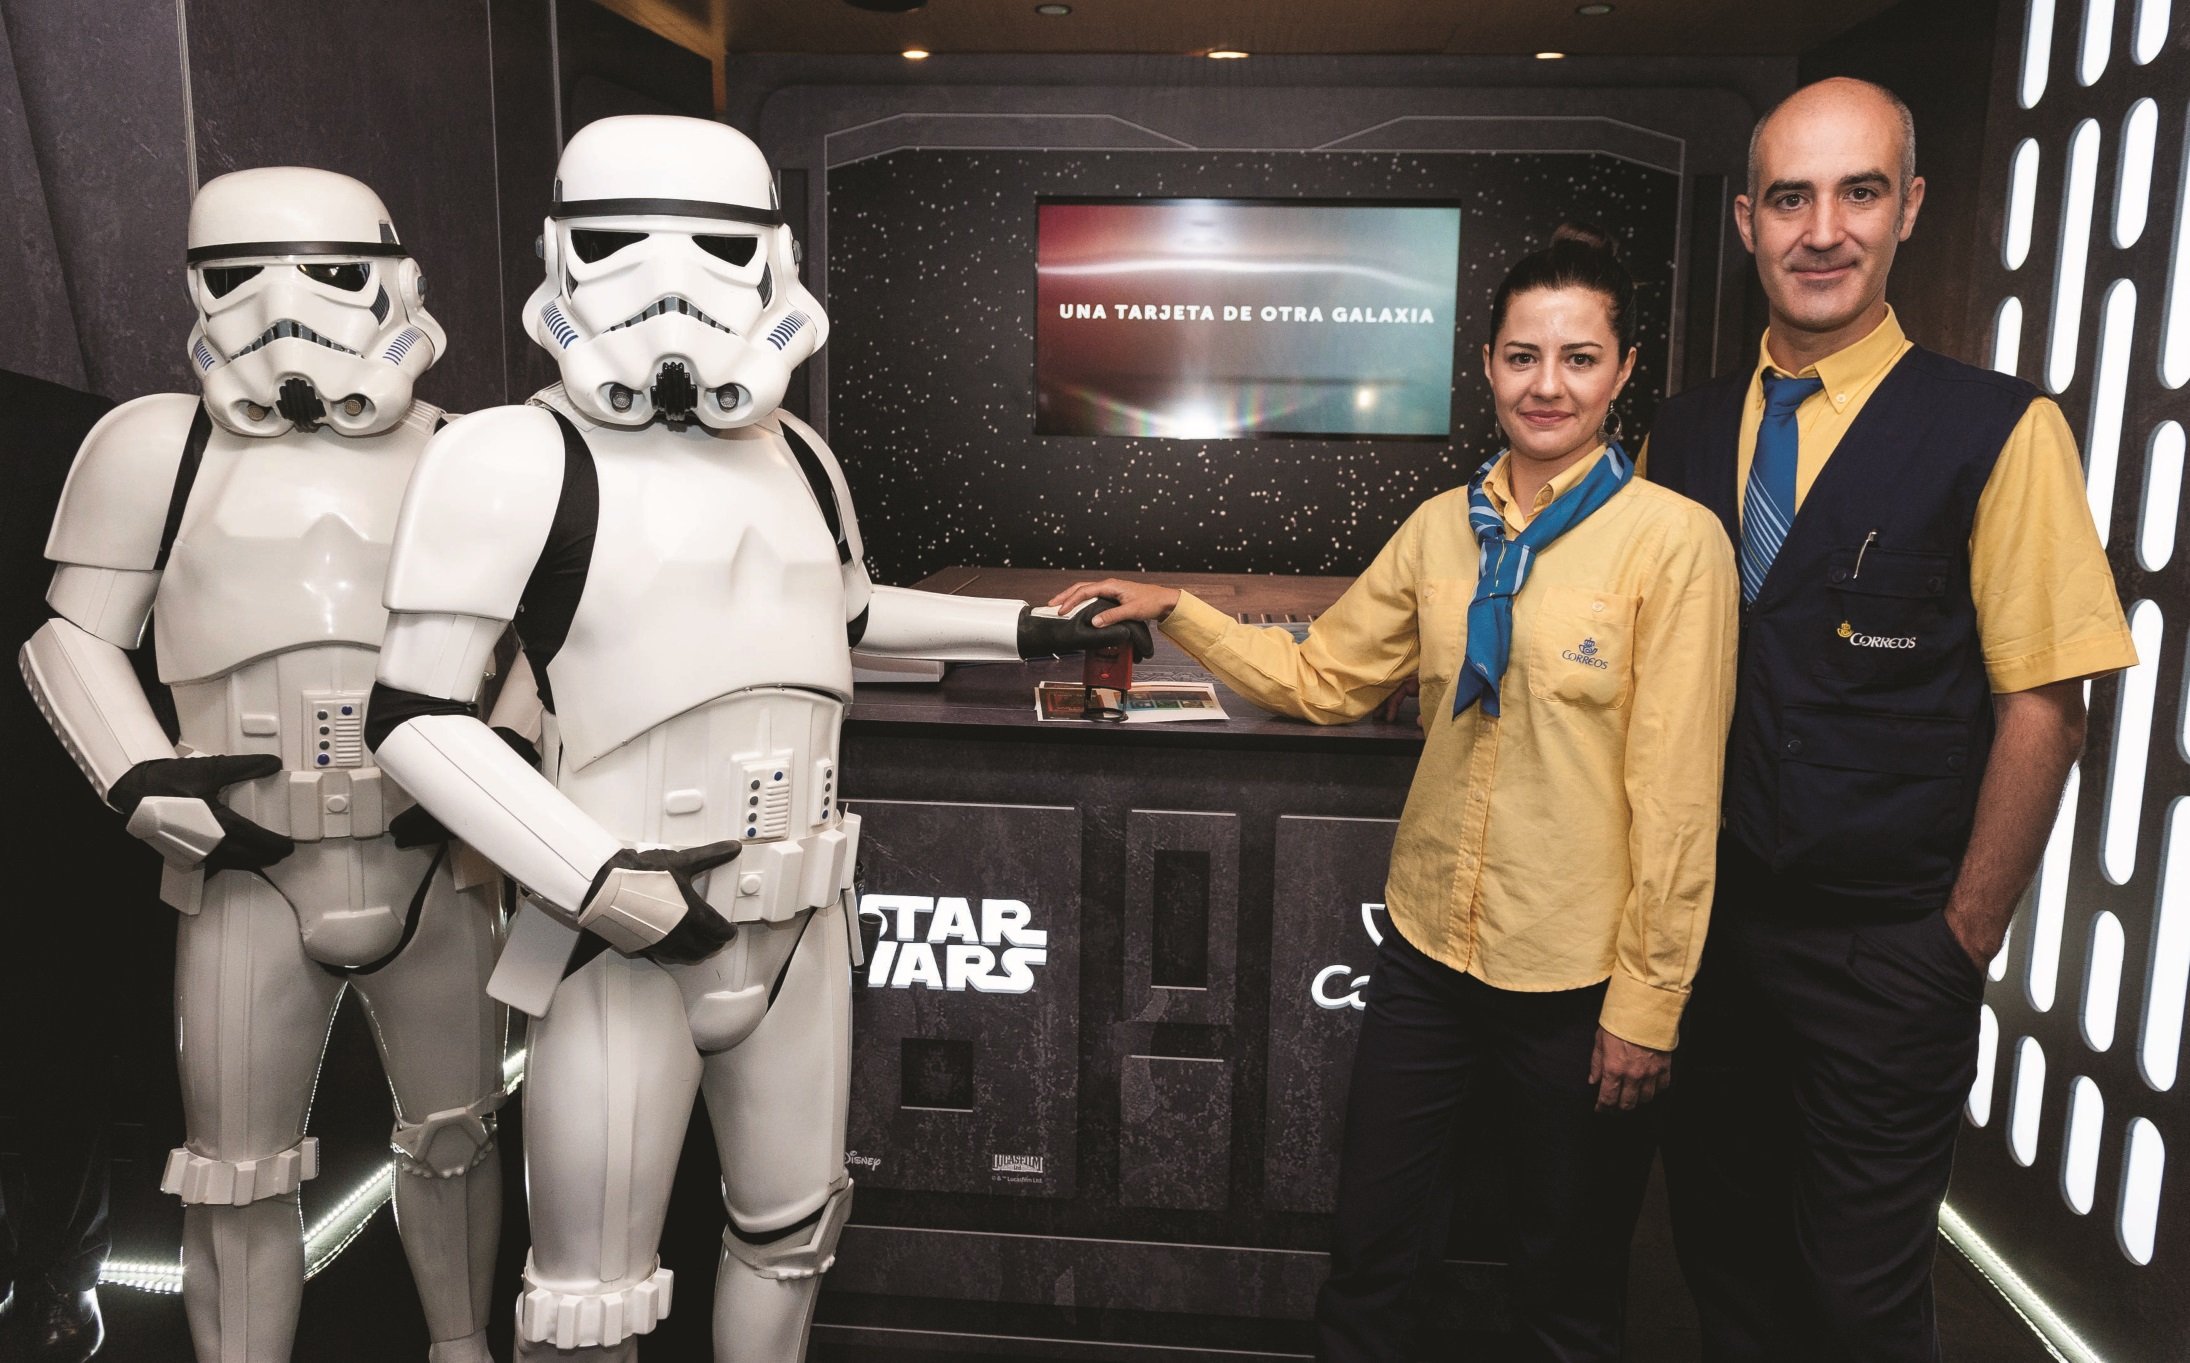 Correos presenta un sello en honor a 'Star Wars'